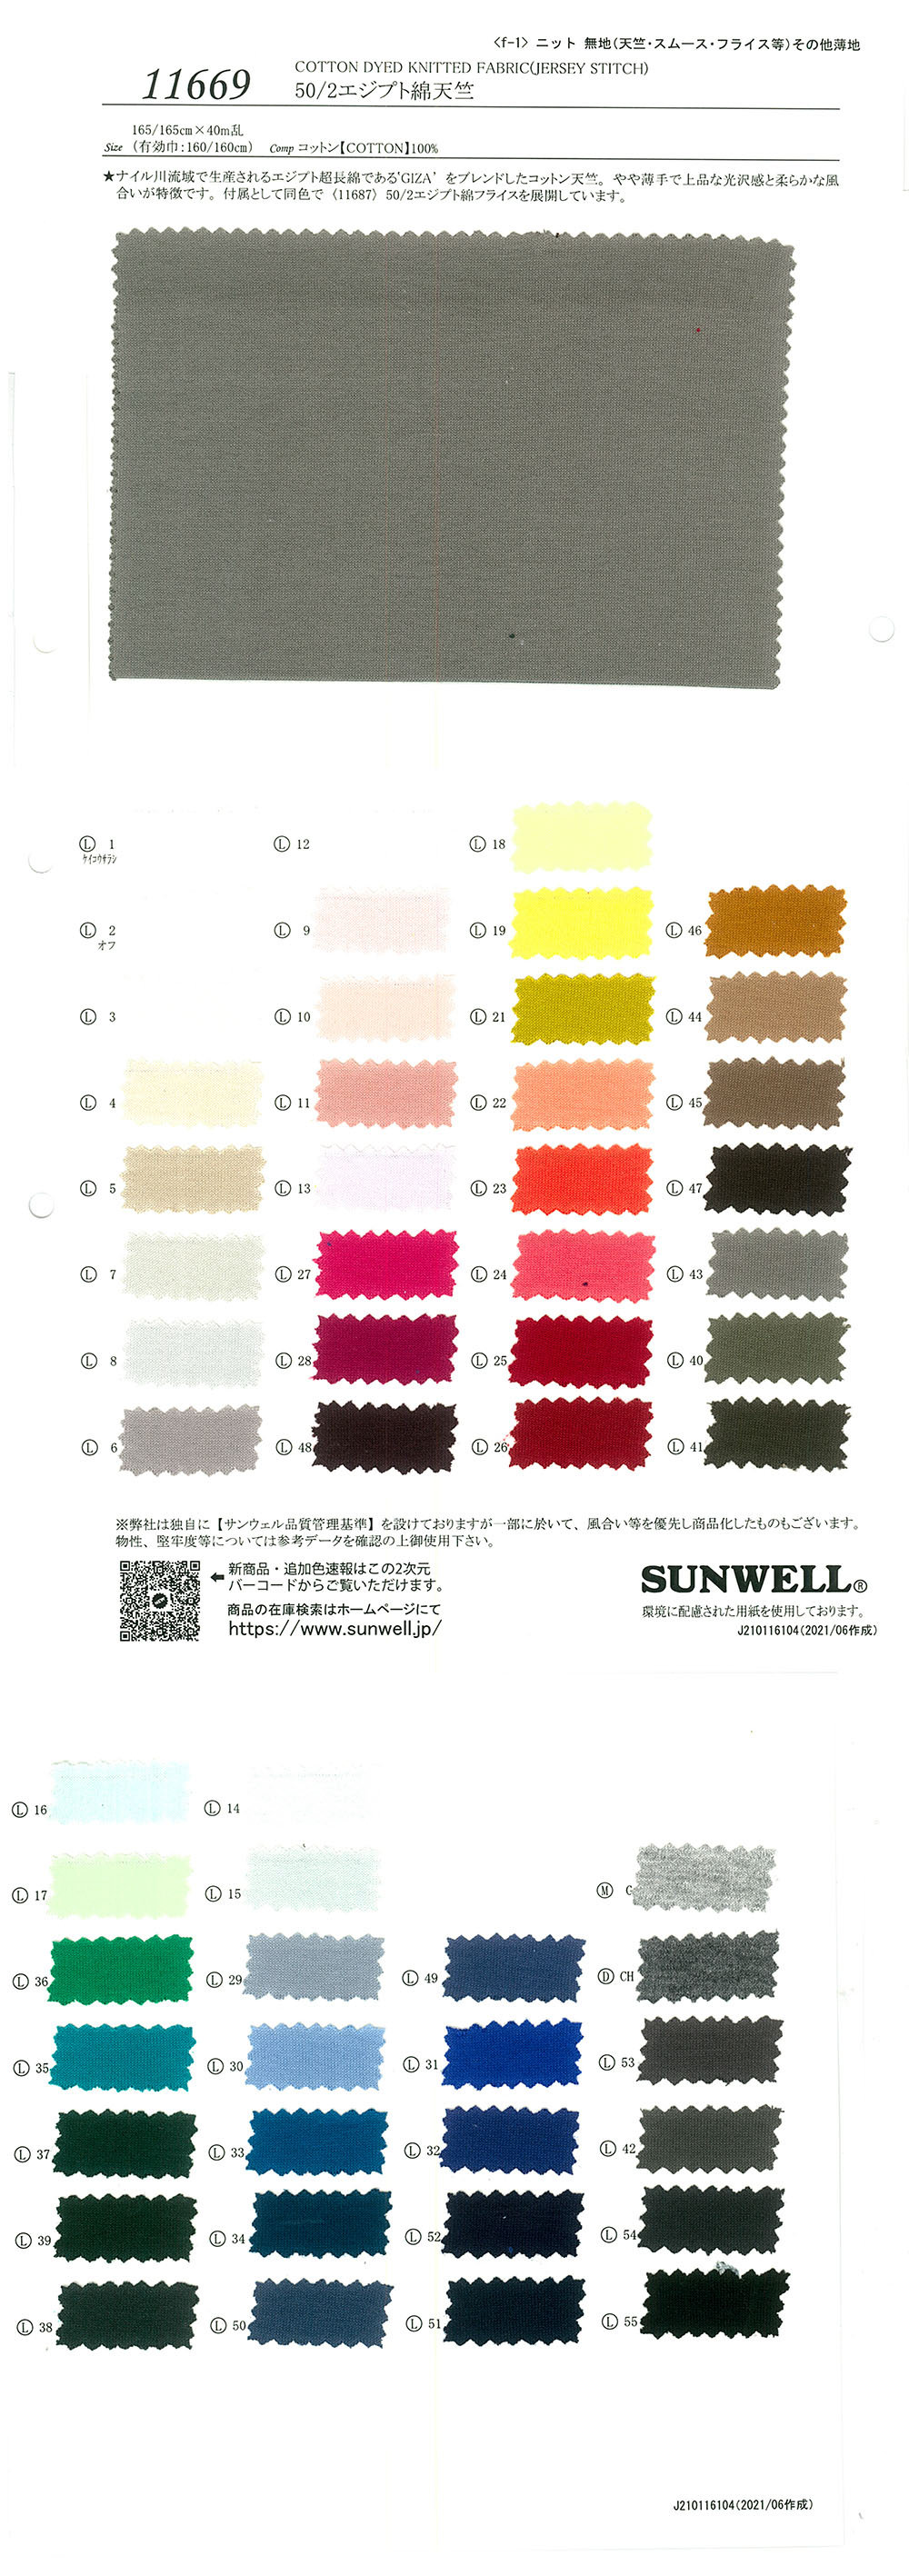 11669 50/2 ägyptische Baumwolle Tianzhu-Baumwolle[Textilgewebe] SUNWELL